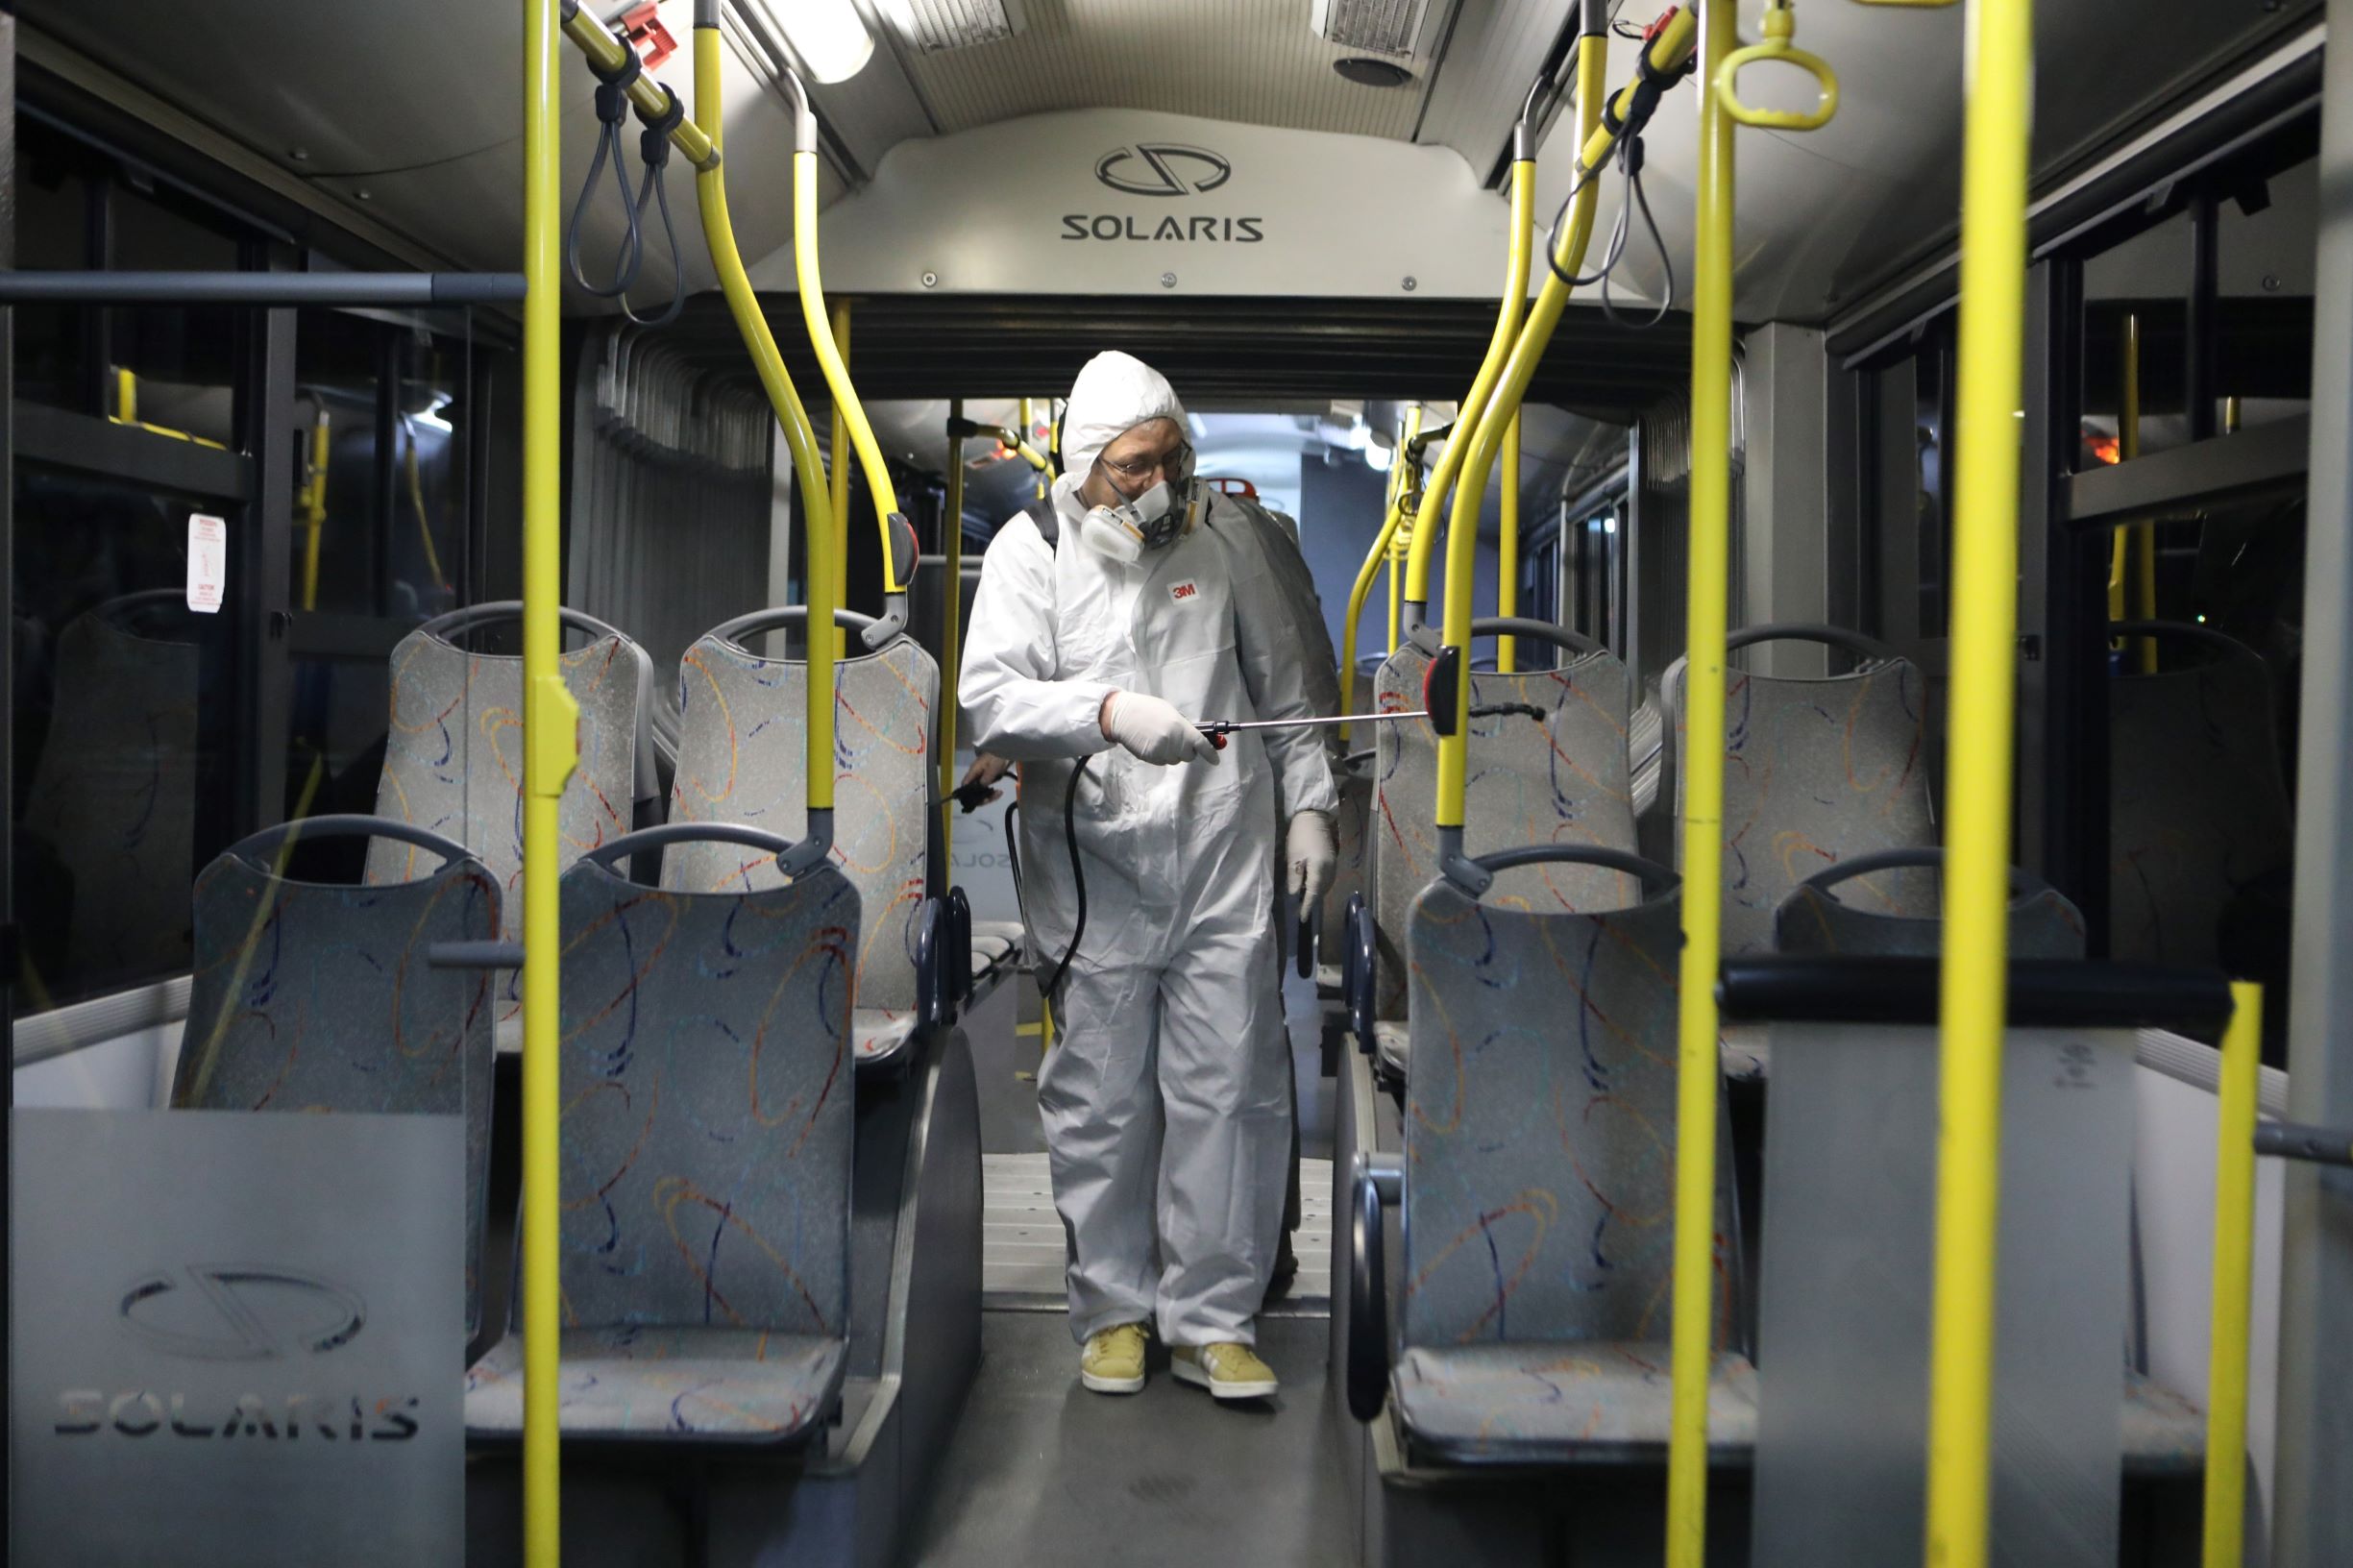 Τα λεωφορεία εξοπλίζονται με αντιμικροβιακά φύλλα χαλκού για προστασία από τον κορονοϊό